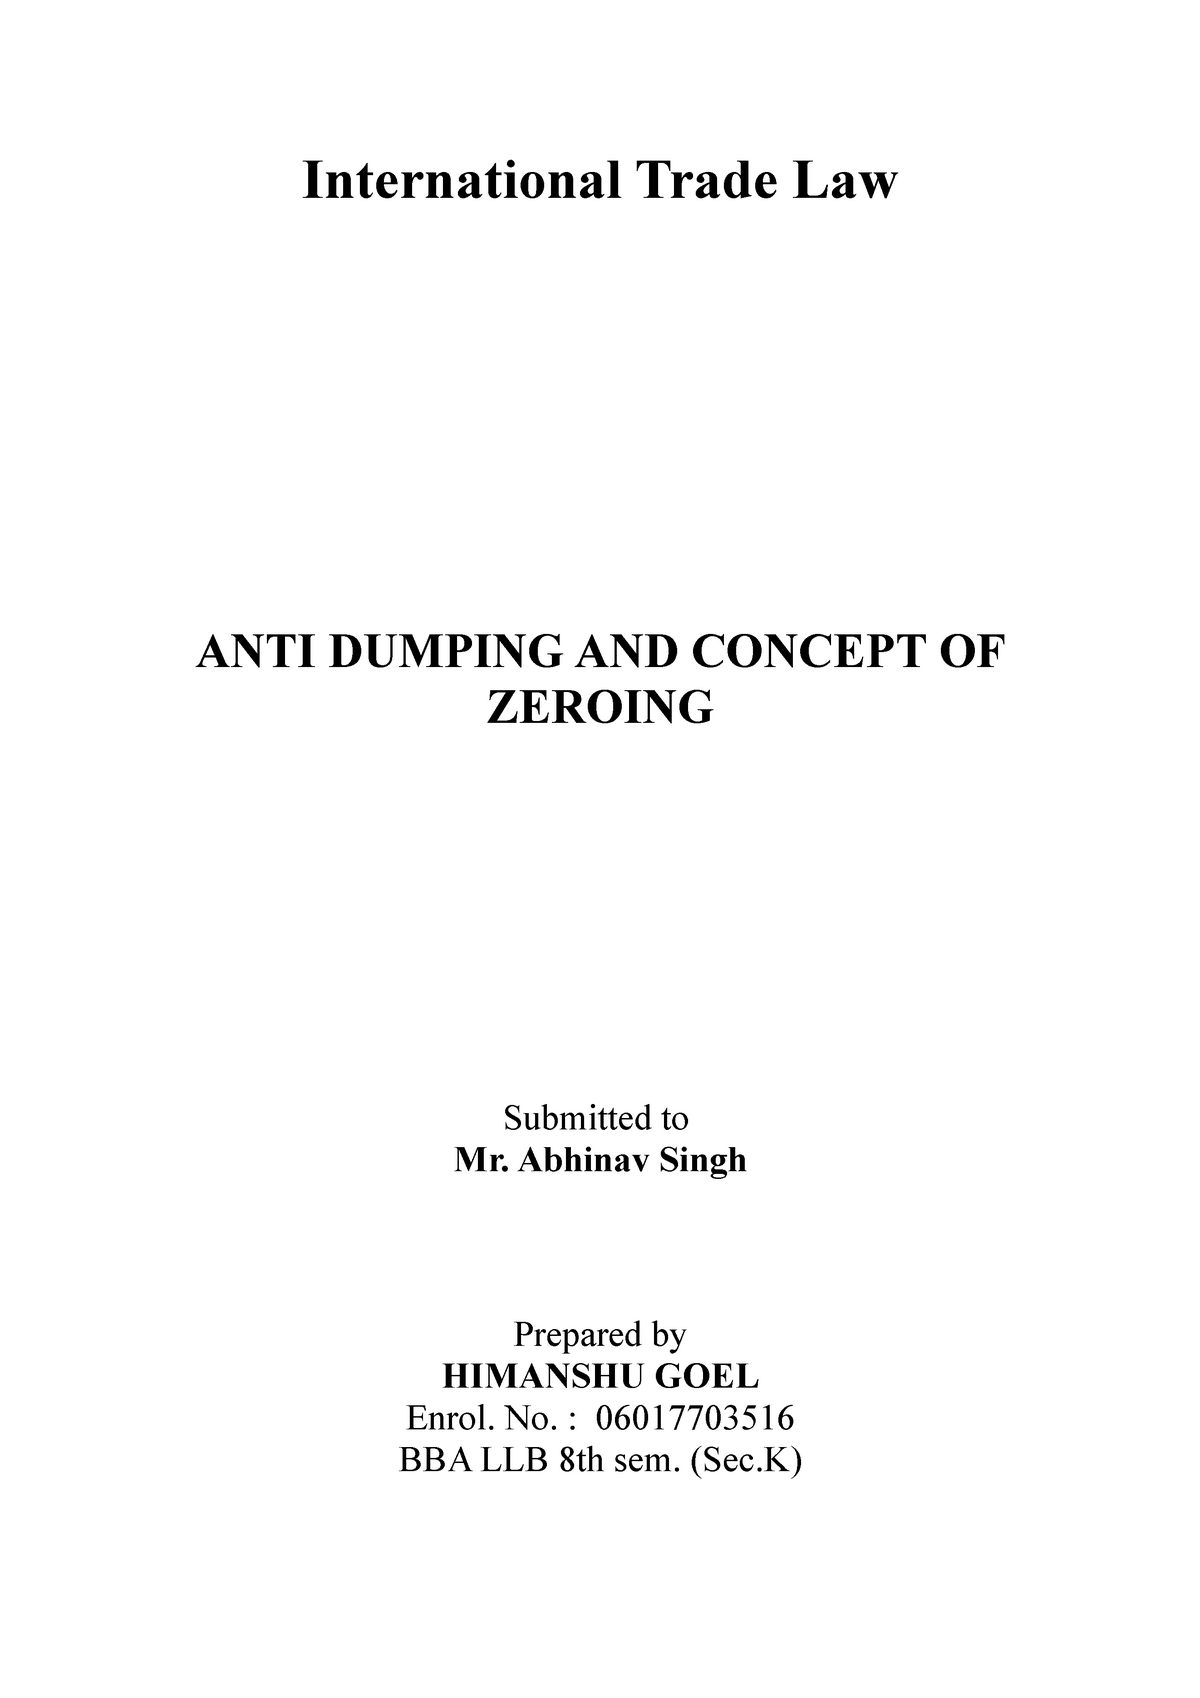 anti dumping thesis